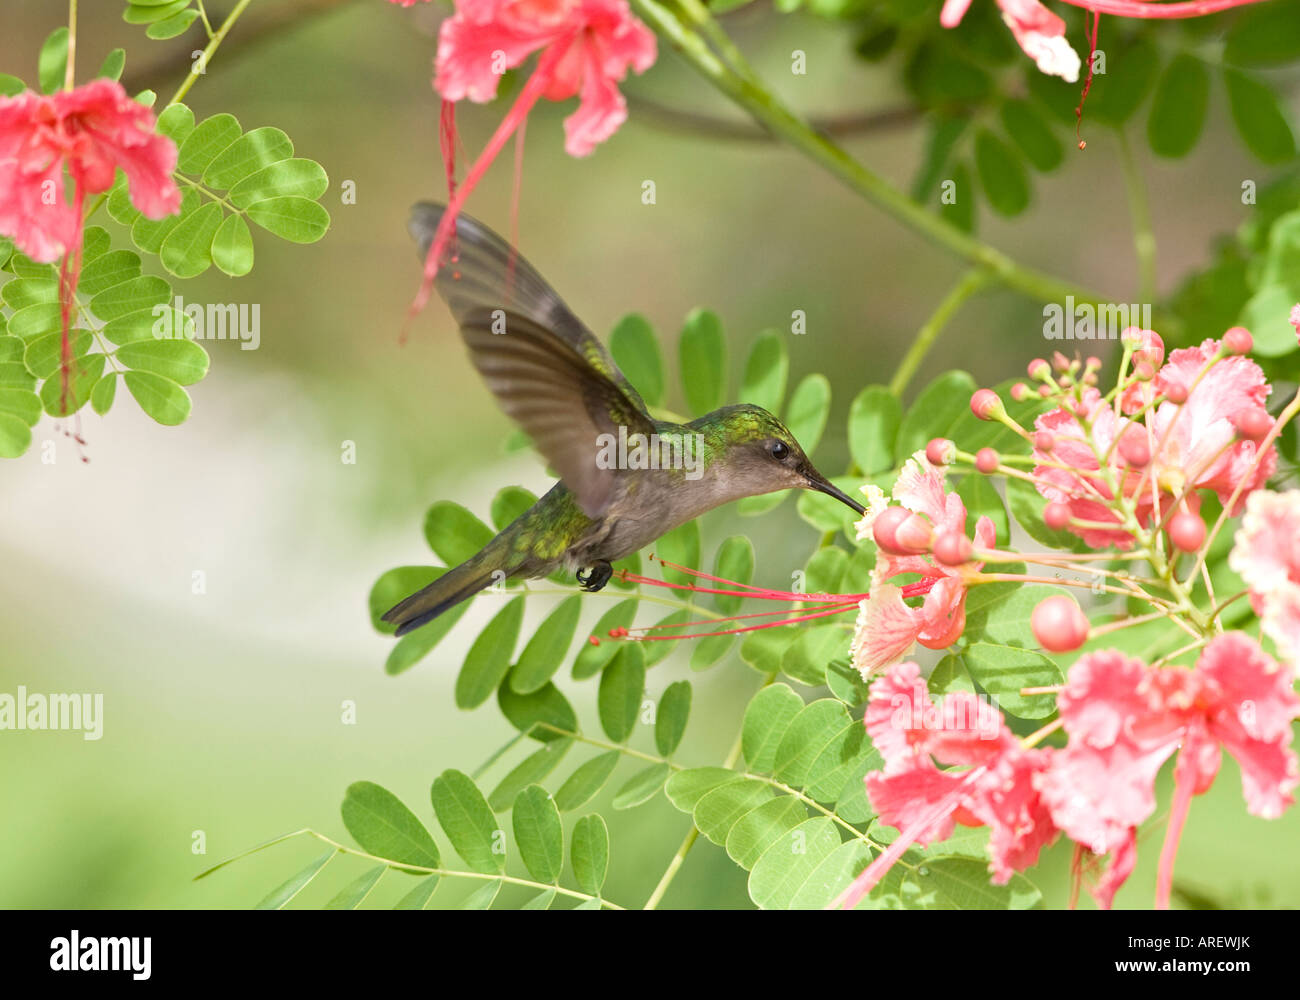 Weibliche Antillean Crested Kolibri im Flug. Stockfoto